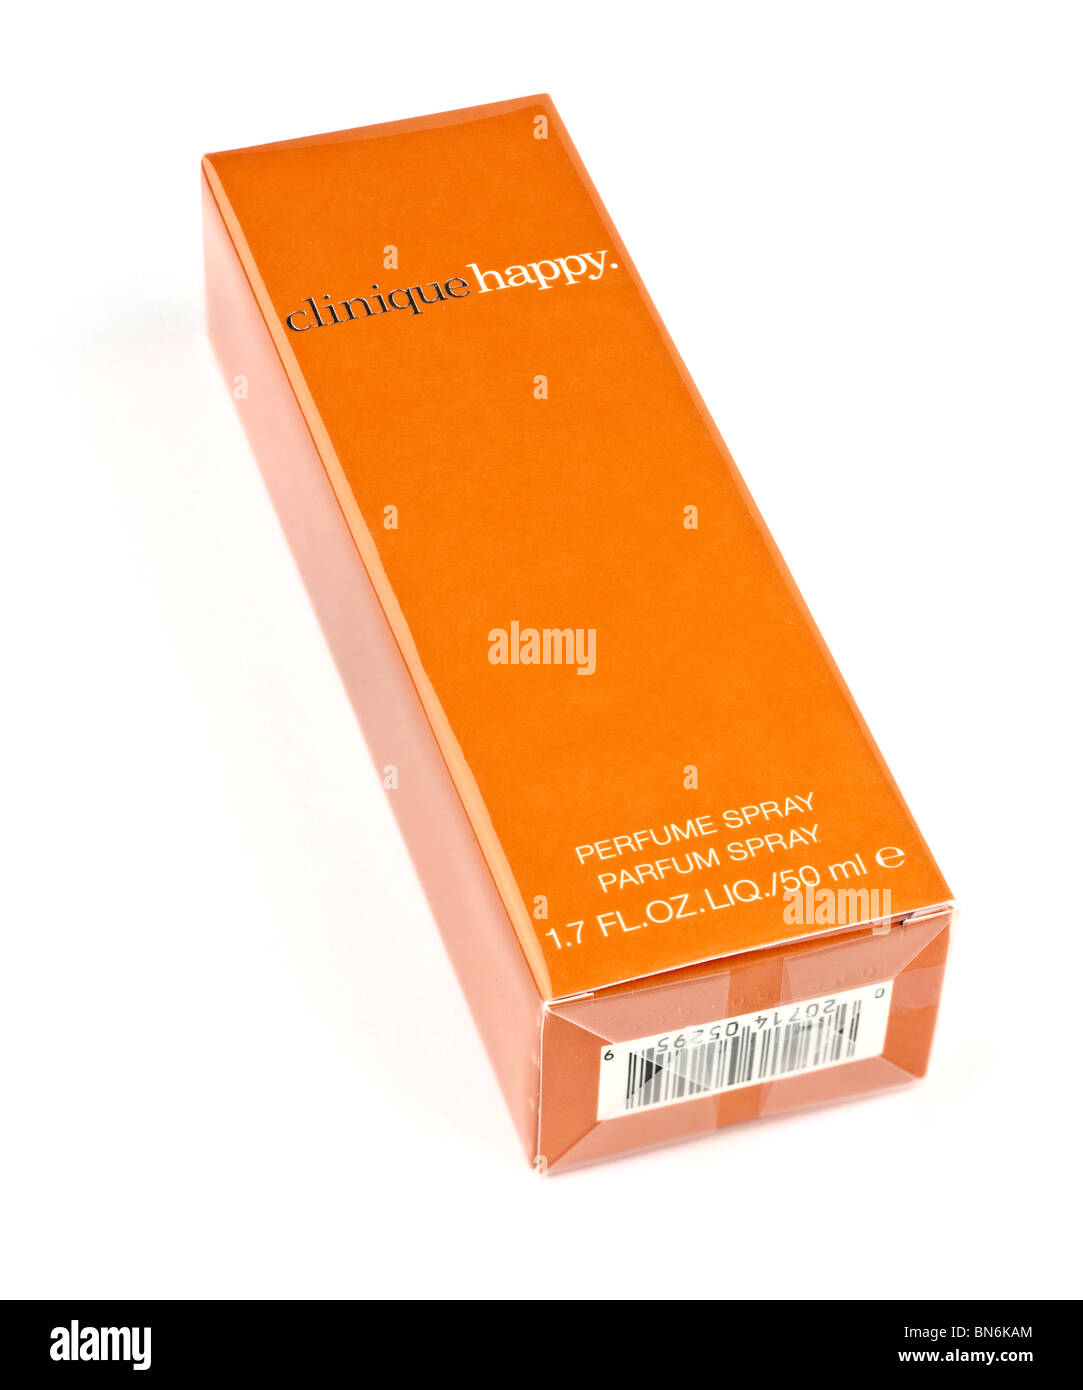 1,7 Flüssigunzen Clinique happy Box Parfüm spray Stockfoto